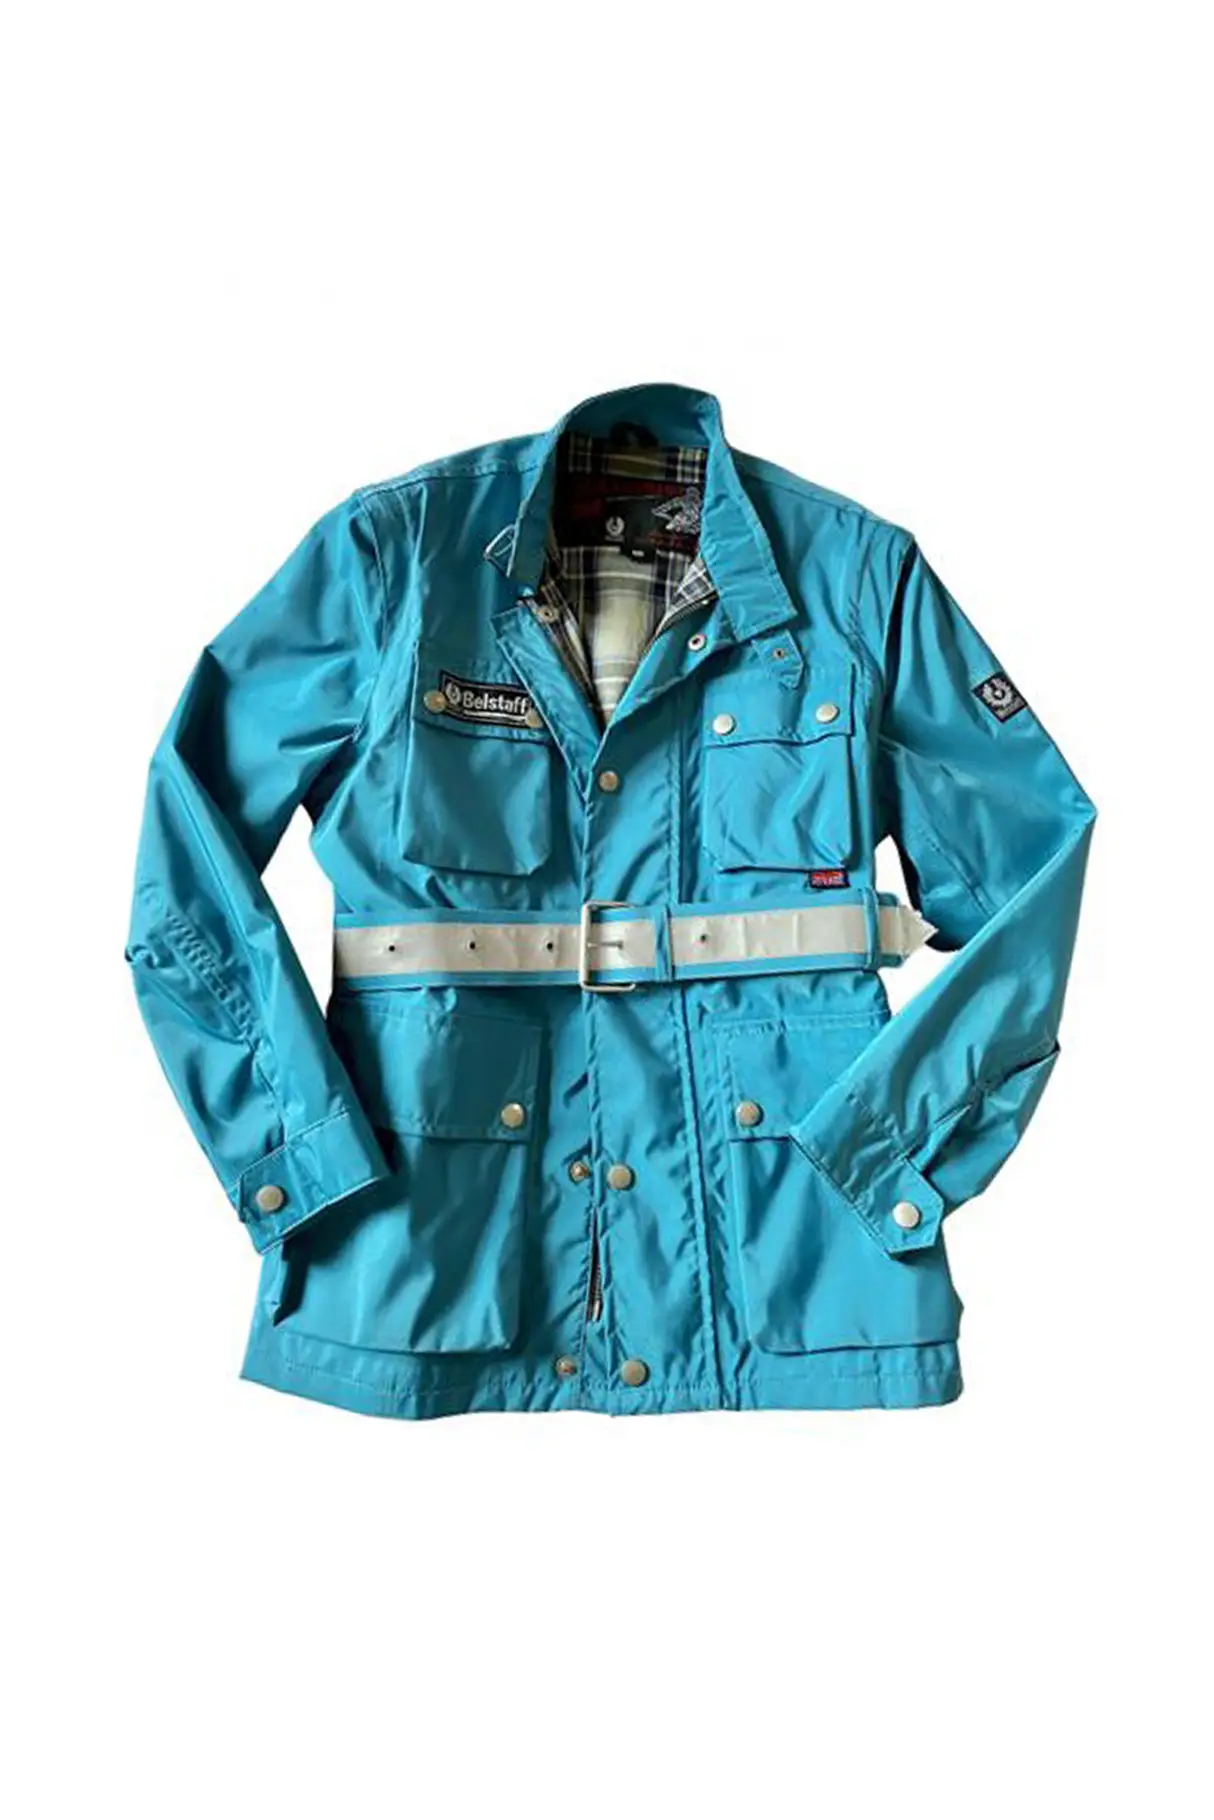 turquoise-hivis-jacket-belstaff-utility-wear.jpg